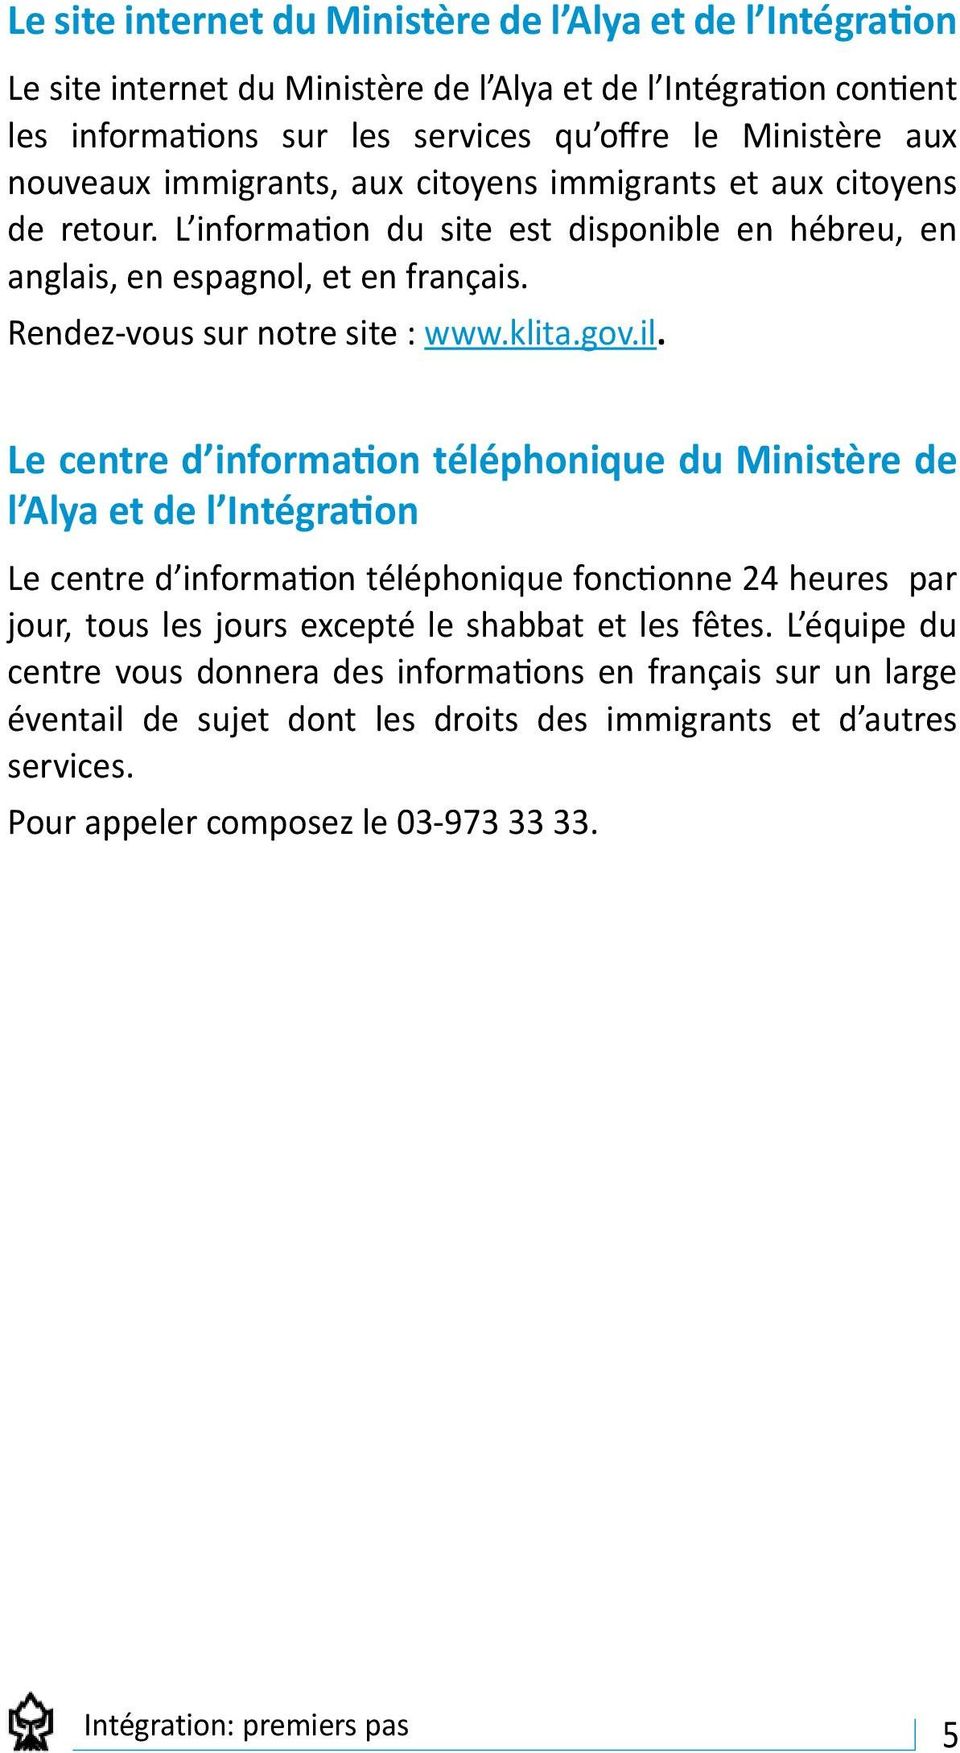 Le centre d information téléphonique du Ministère de l Alya et de l Intégration Le centre d information téléphonique fonctionne 24 heures par jour, tous les jours excepté le shabbat et les fêtes.